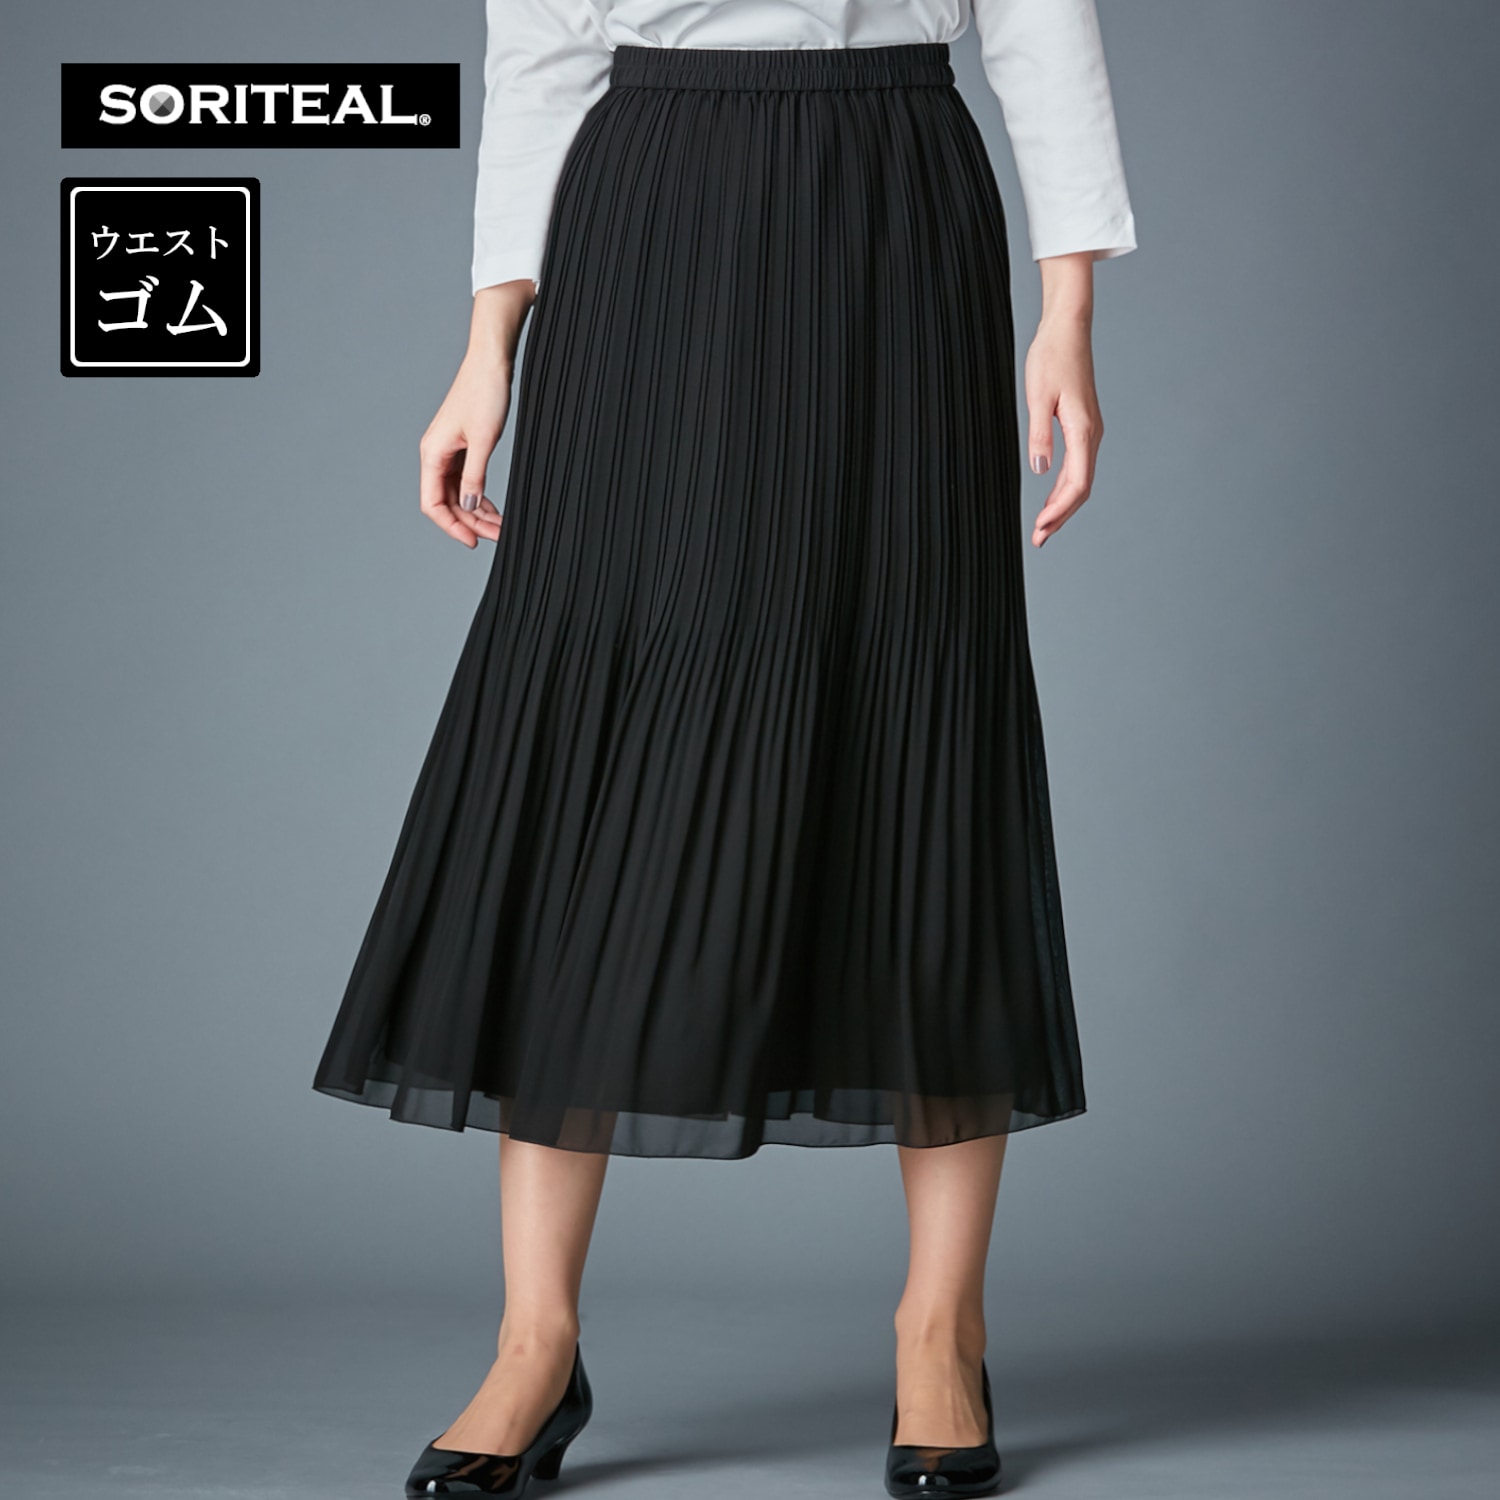 【ソリテール/SORITEAL】フォーマルに◎ウエストゴムのロングプリーツスカート【S~3L】【喪服・礼服にも】